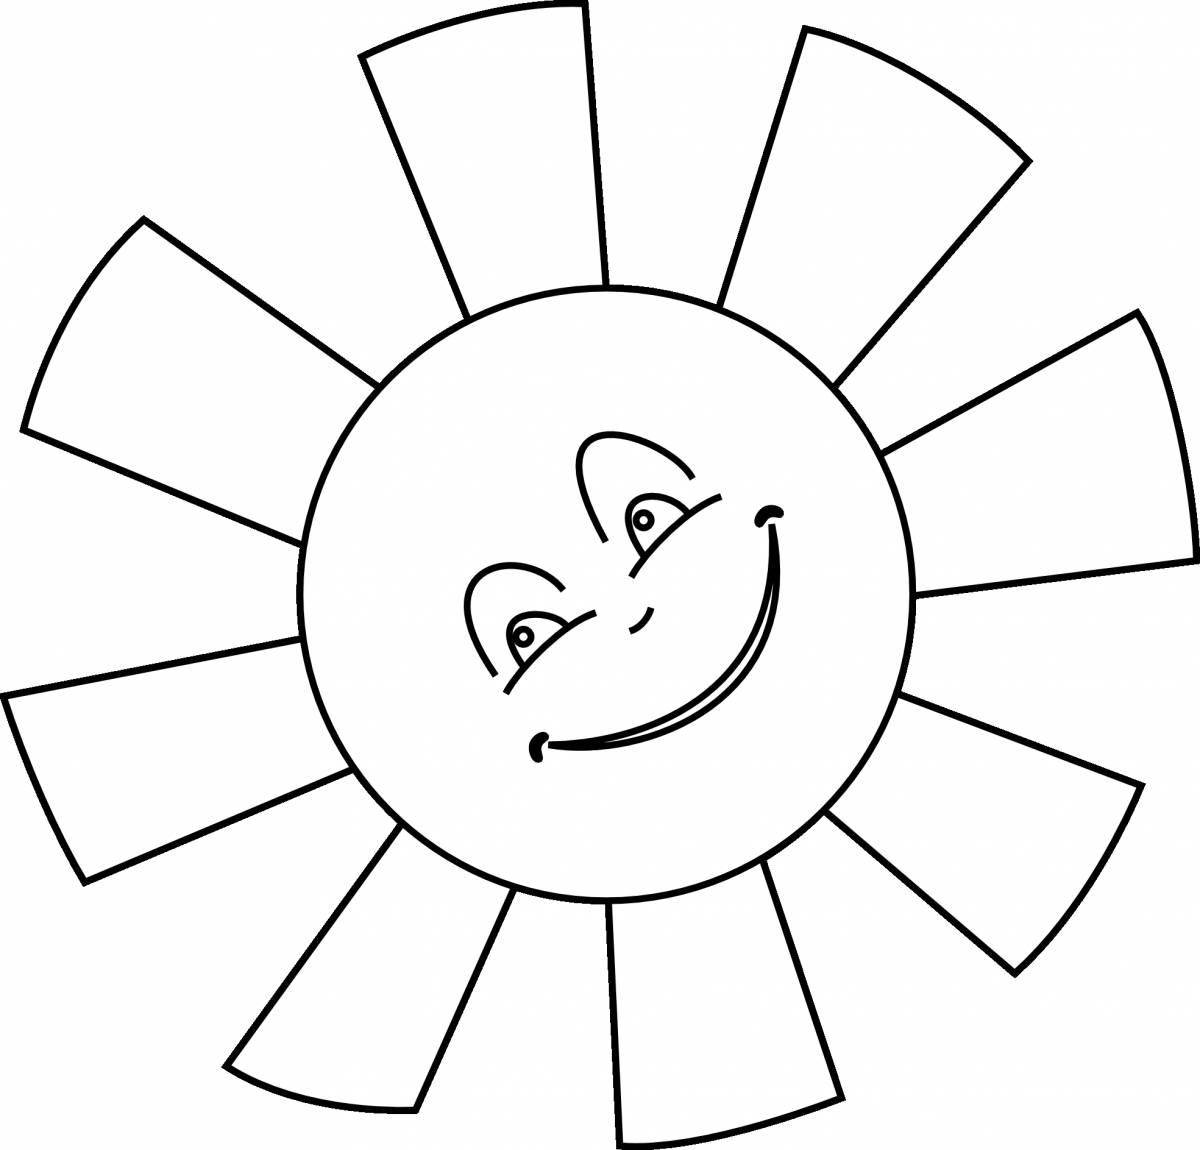 Удовлетворительная раскраска солнечная картинка для детей